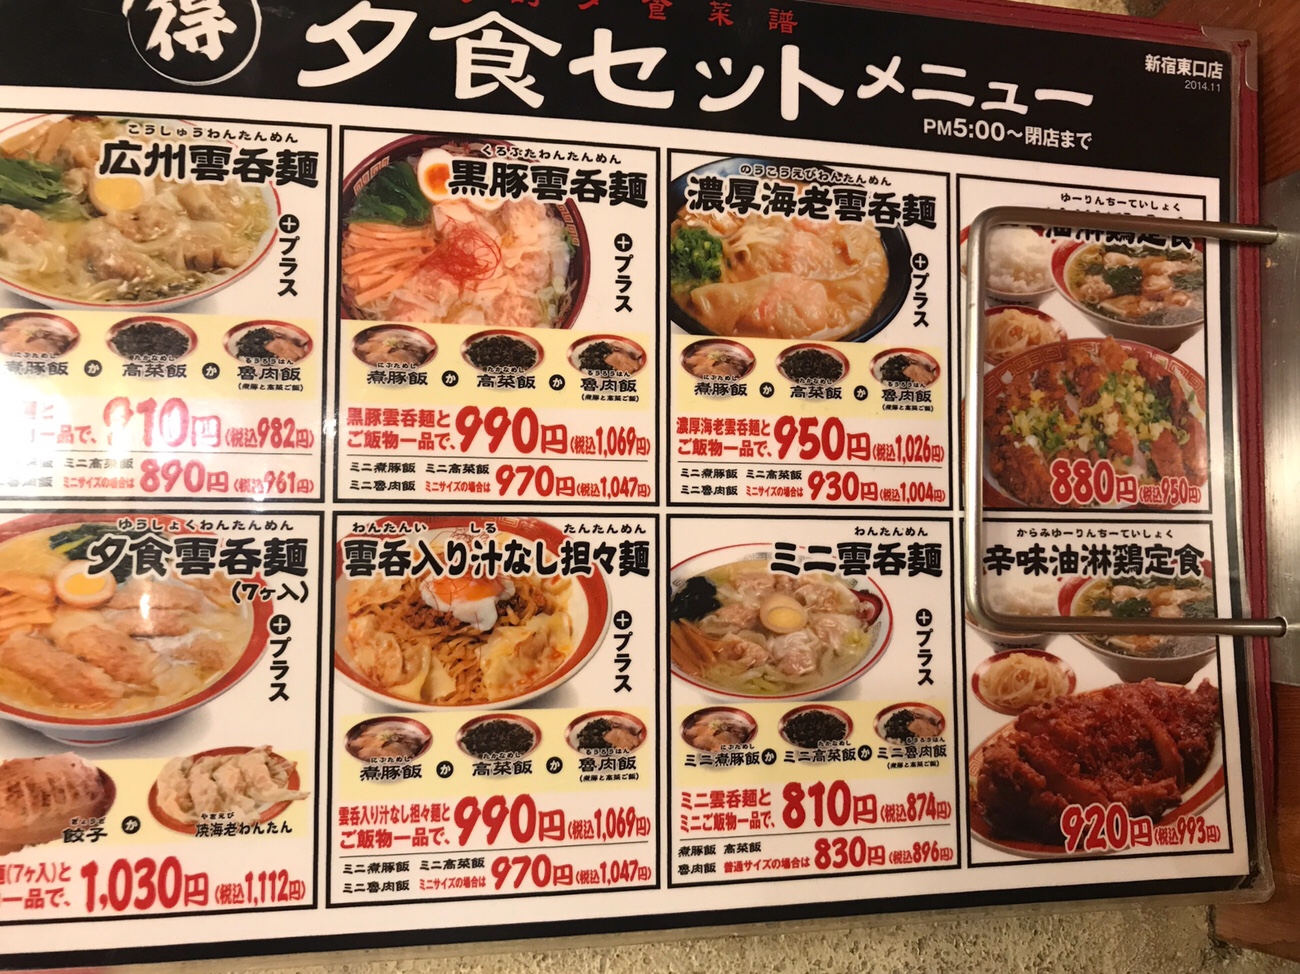 ワンタン麺広州市場の定食メニュー